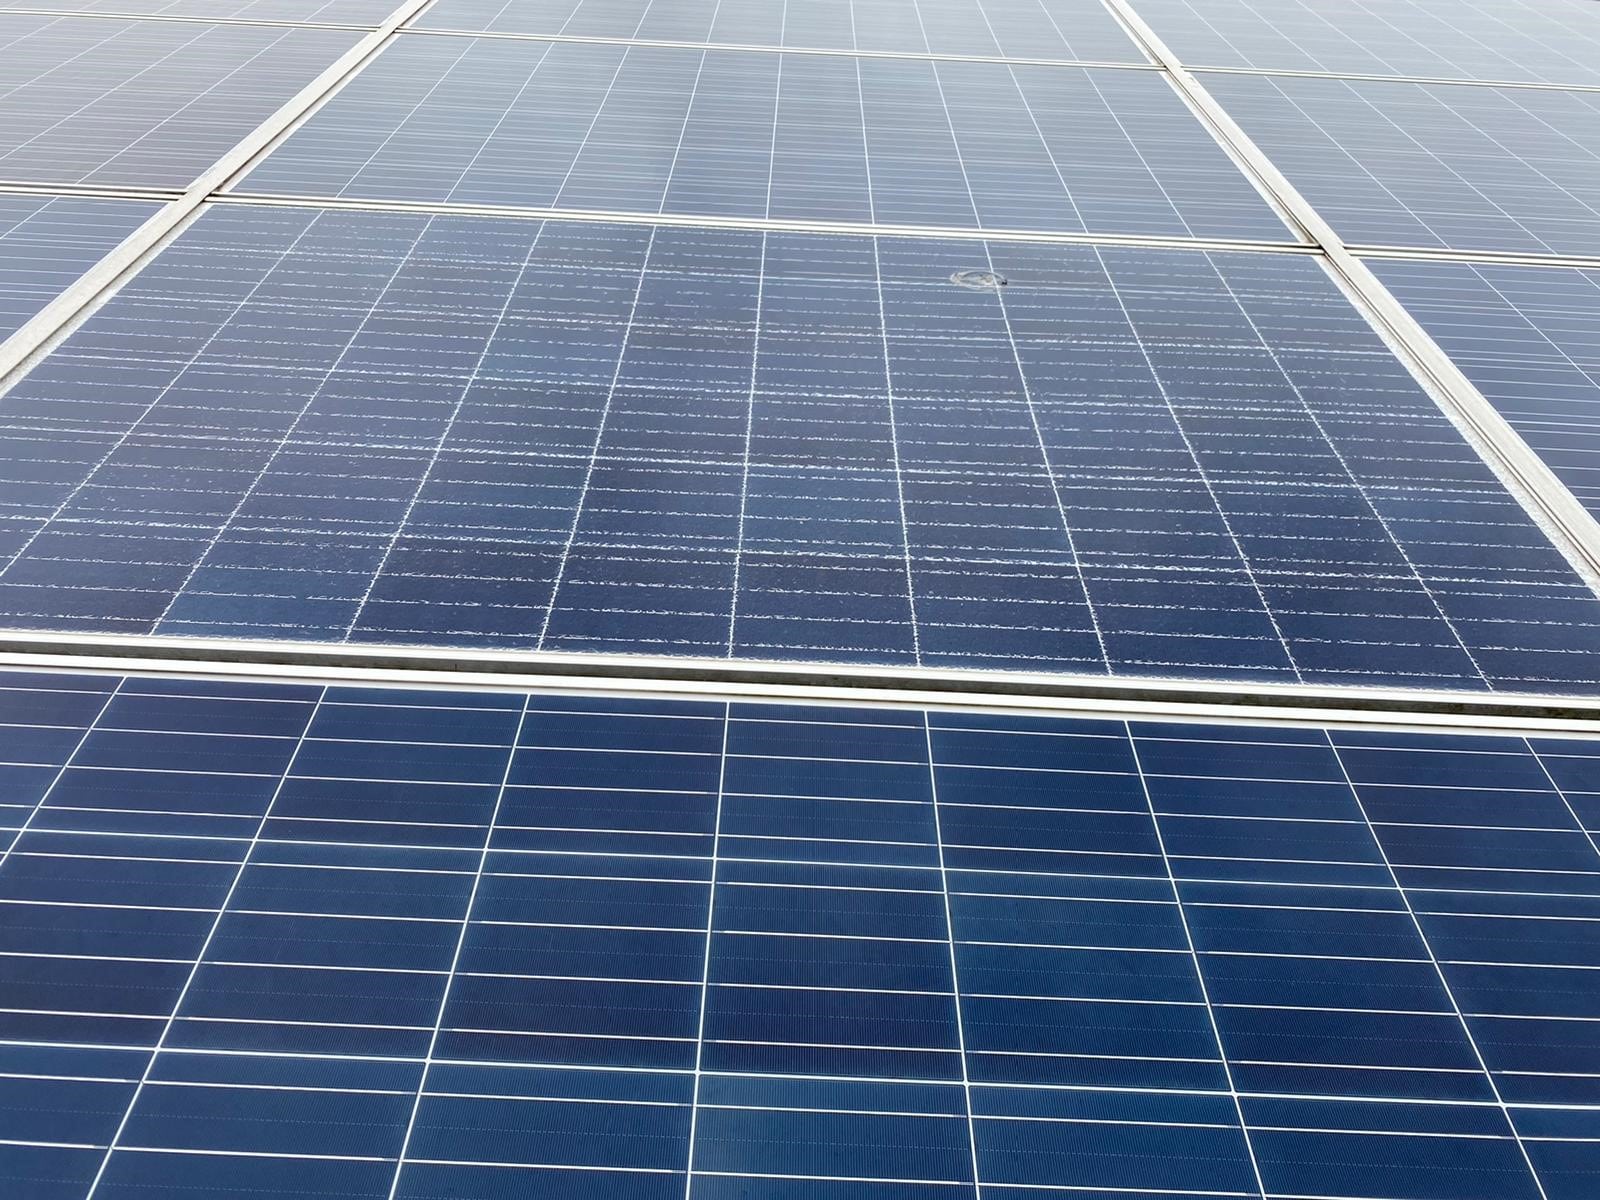 Solarpark Reinigung: Sichtkontrolle von PV Modulen